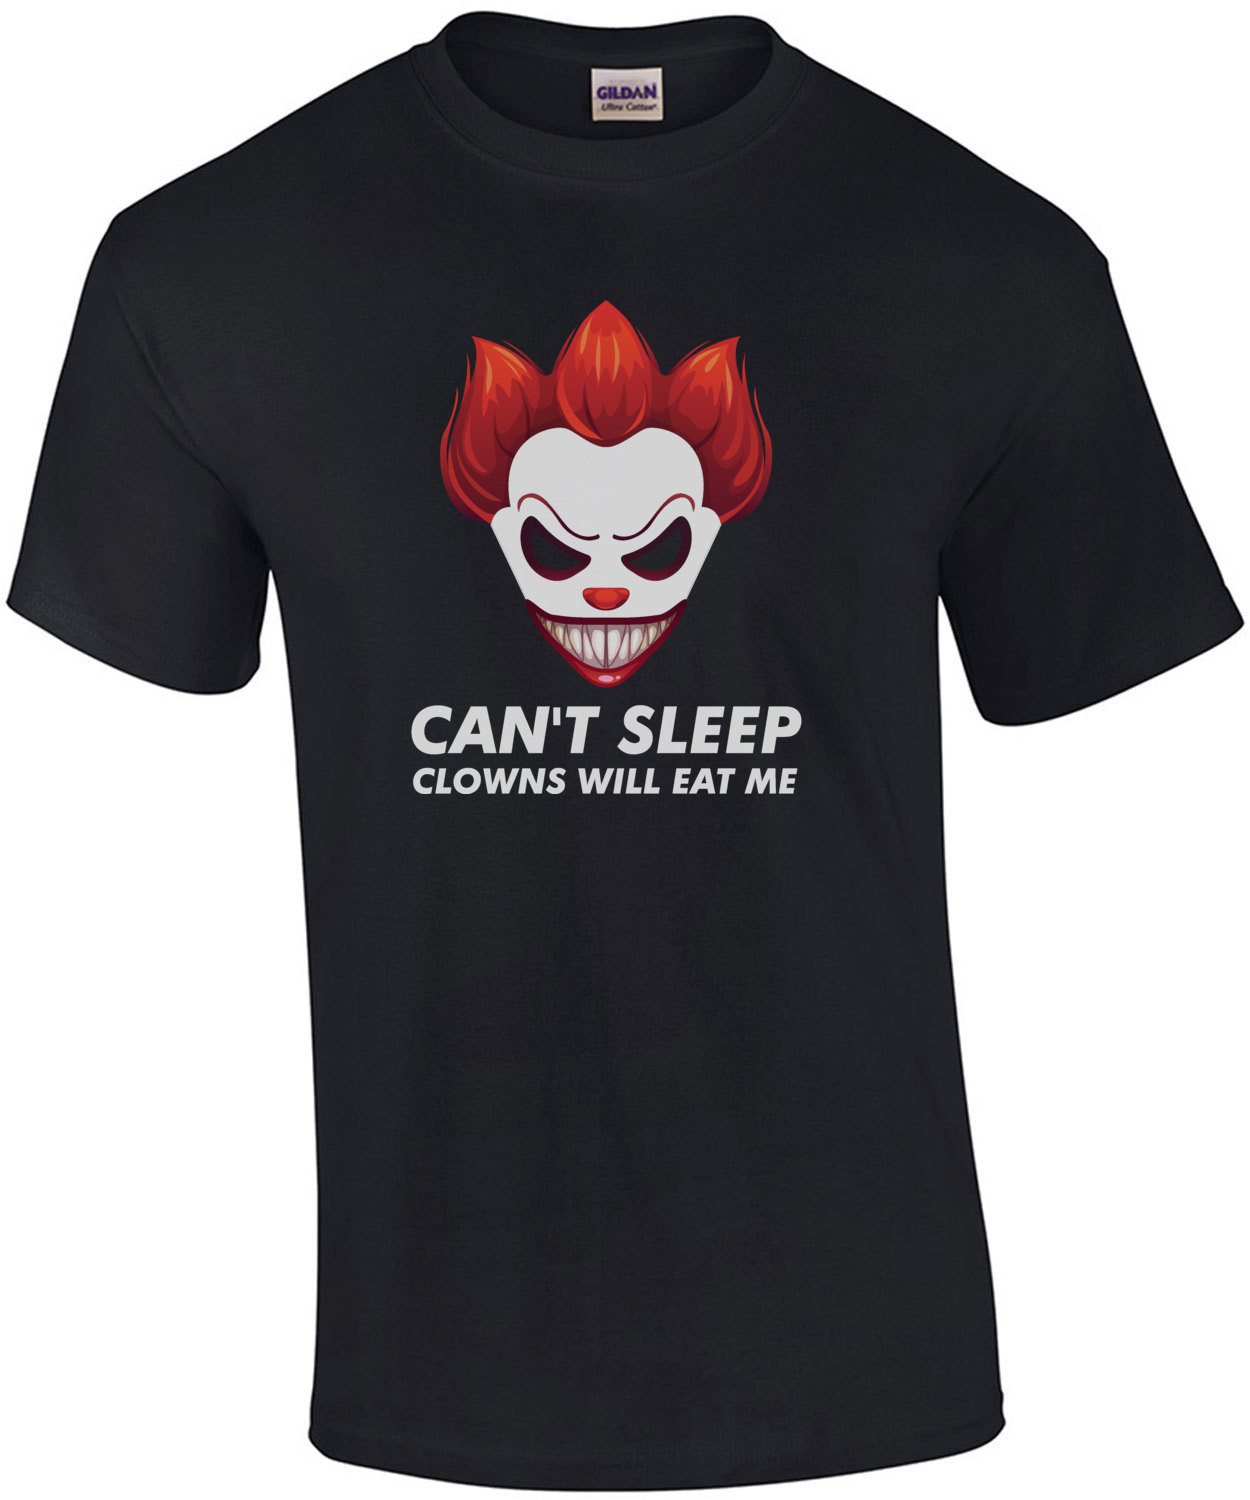 Can't sleep - clowns will eat me - clown t-shirt